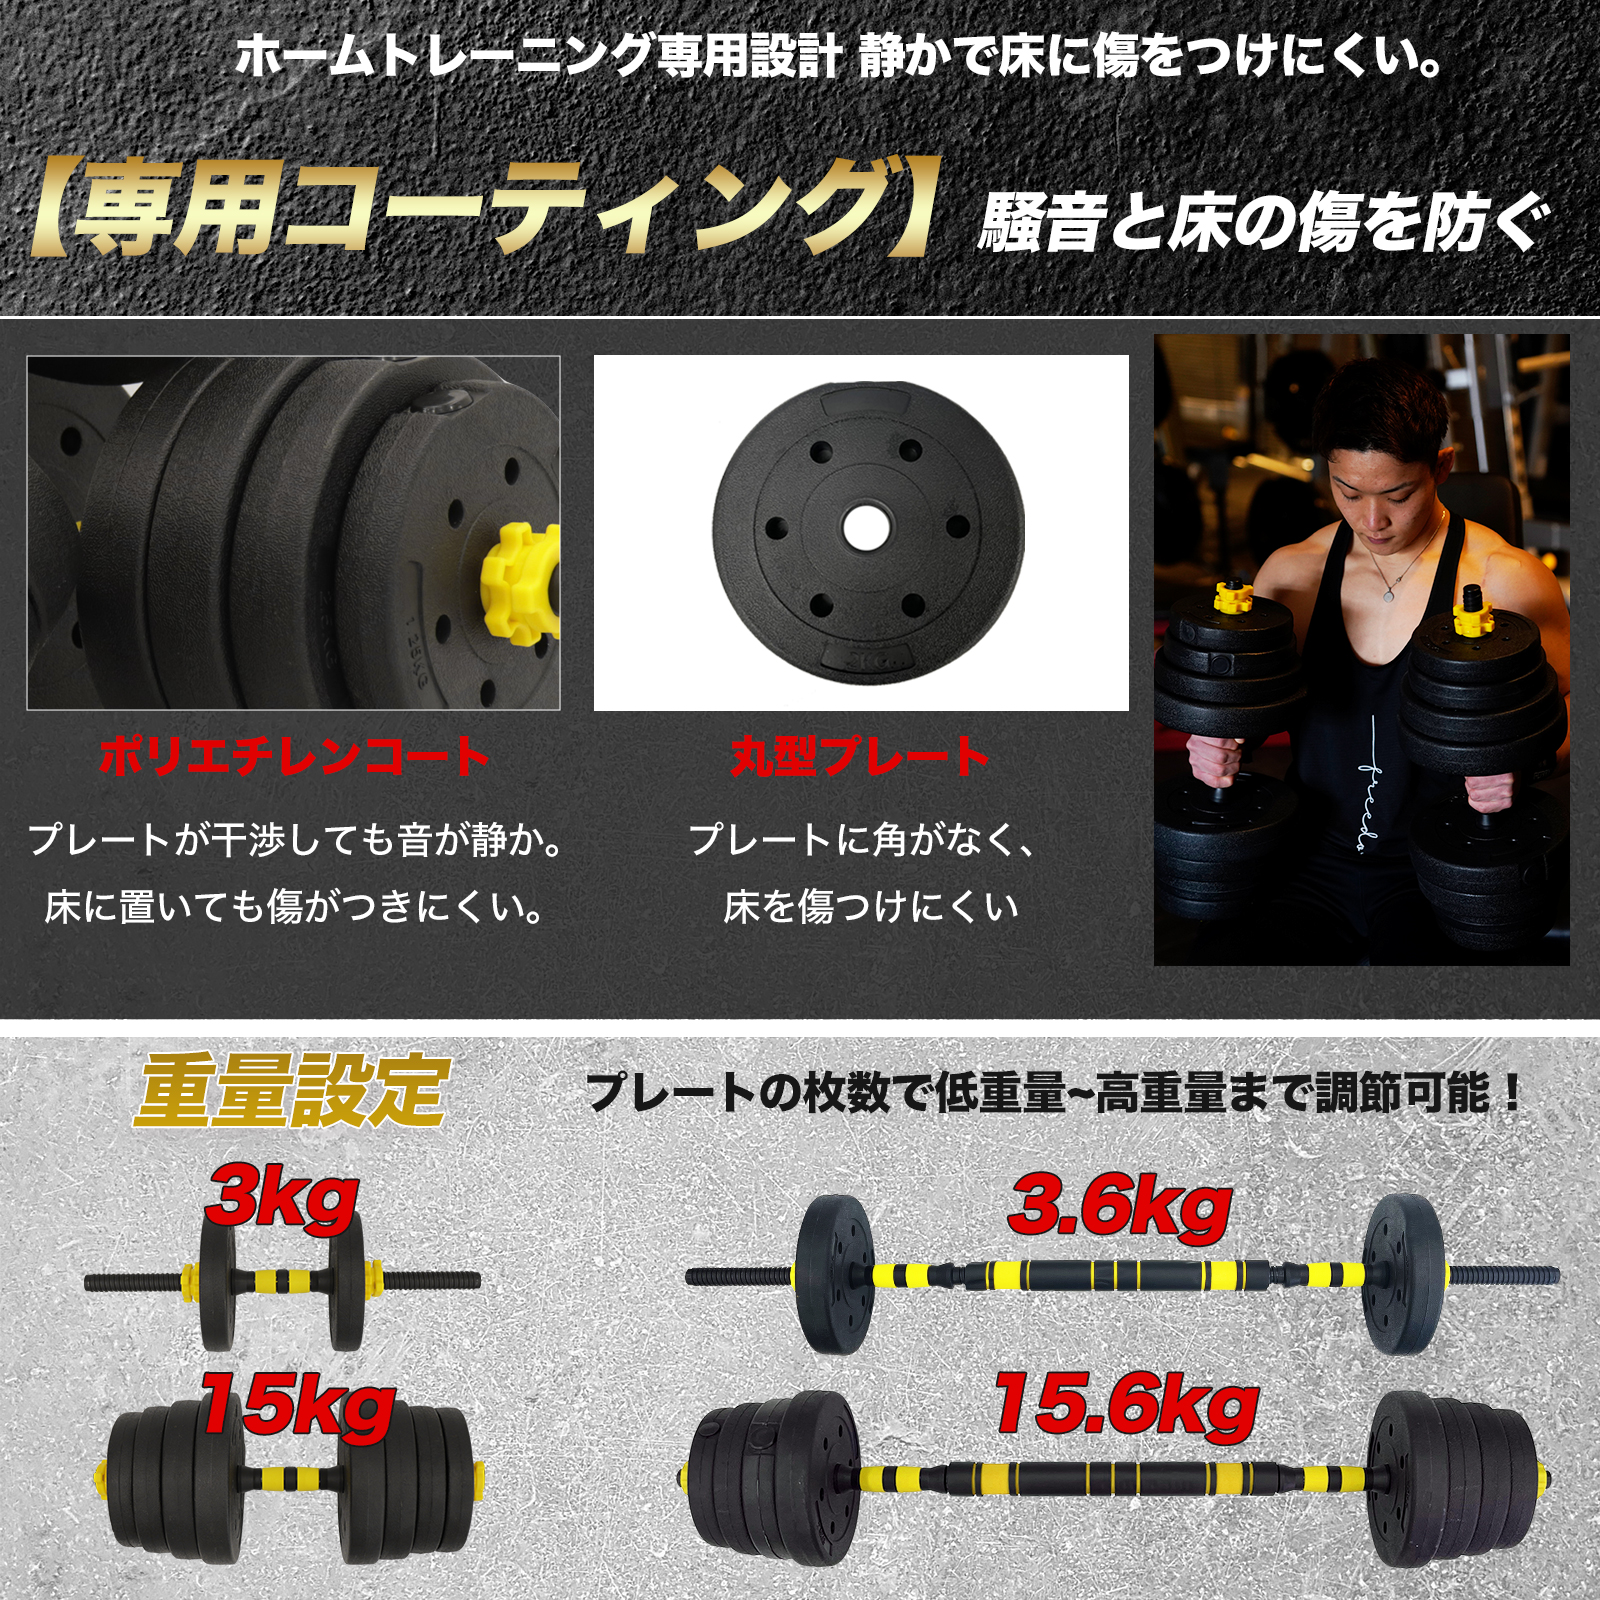 ダンベル 可変式 30kg 15kg 10kg 5kg 20kg 2個セット 3kg 筋トレ バーベル トレーニング フィットネス 安い 着脱簡単  安全 コンパクト